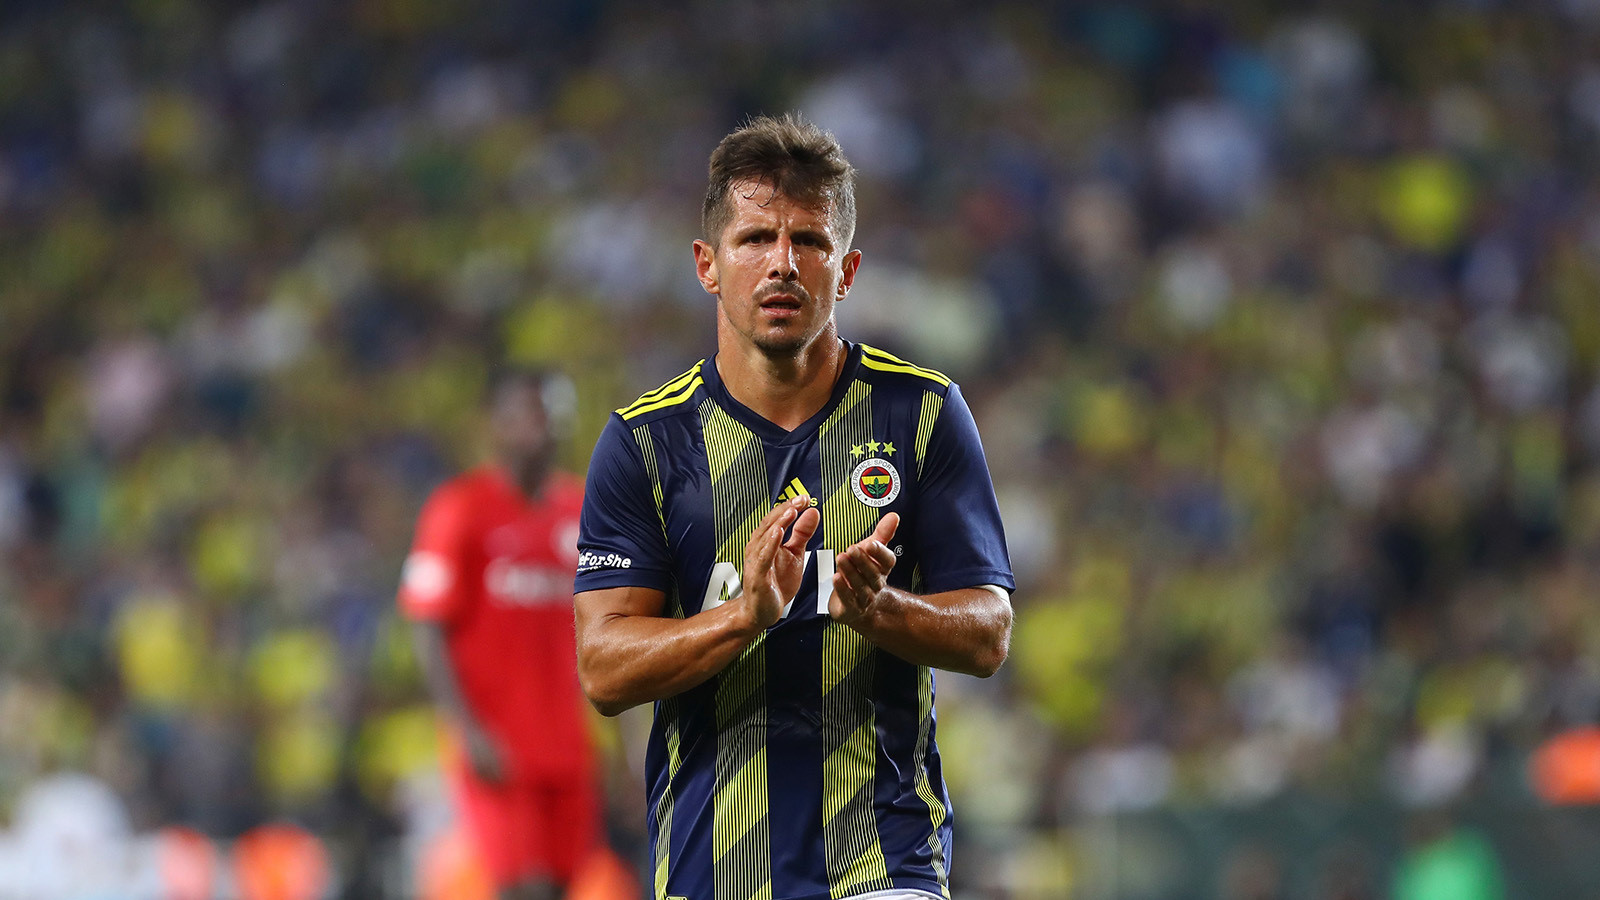 39 yaşındaki Emre Belözoğlu, bu sezon sarı-lacivertli formayla çıktığı 6 maçta 1 gol 1 asist kaydetti.